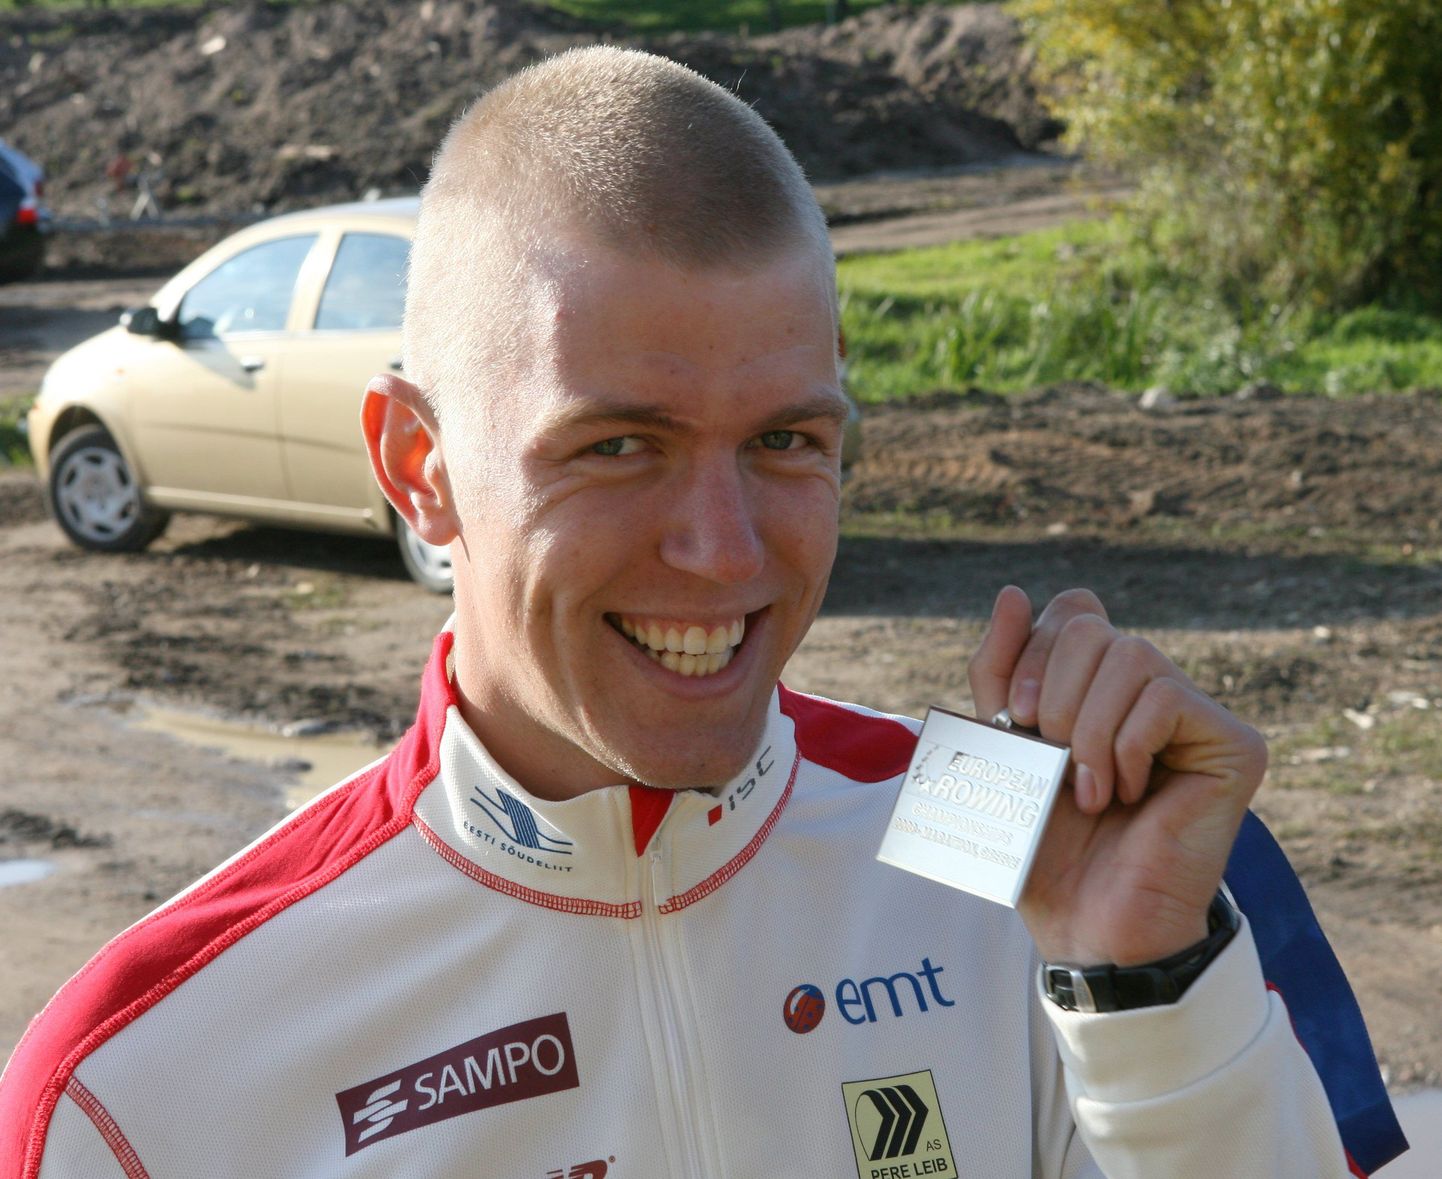 Viljandimaa 2008. aasta parima meessportlase, sõudja Kaspar Taimsoo tänavune suurim siht on jõuda alla
23-aastaste meistrivõistlustel kõrgele kohale.